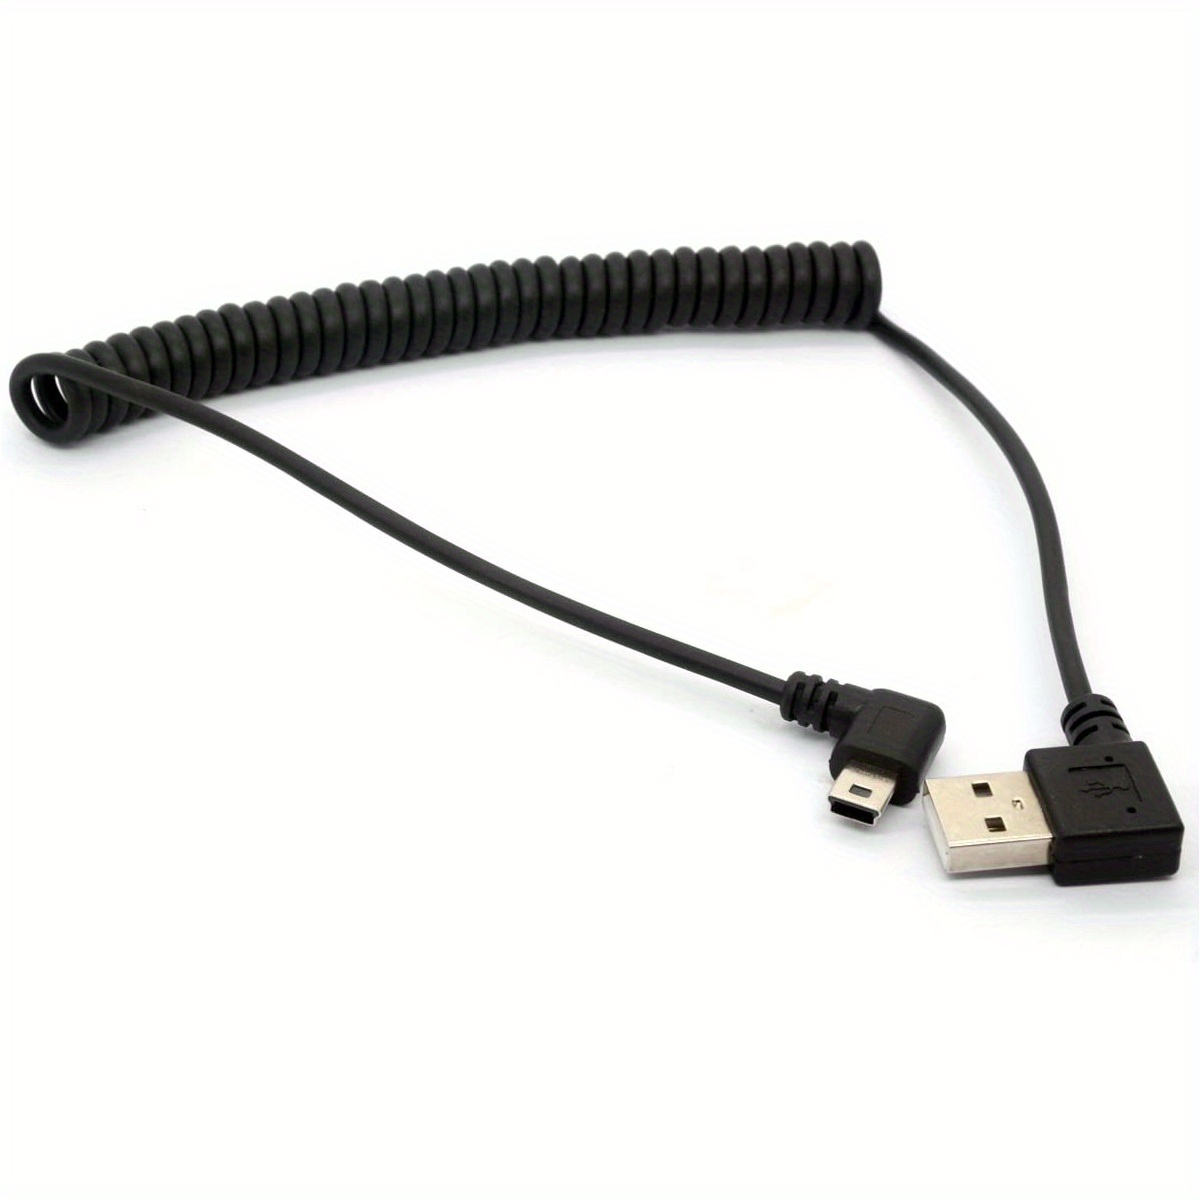  BolAAzuL : USB Cables